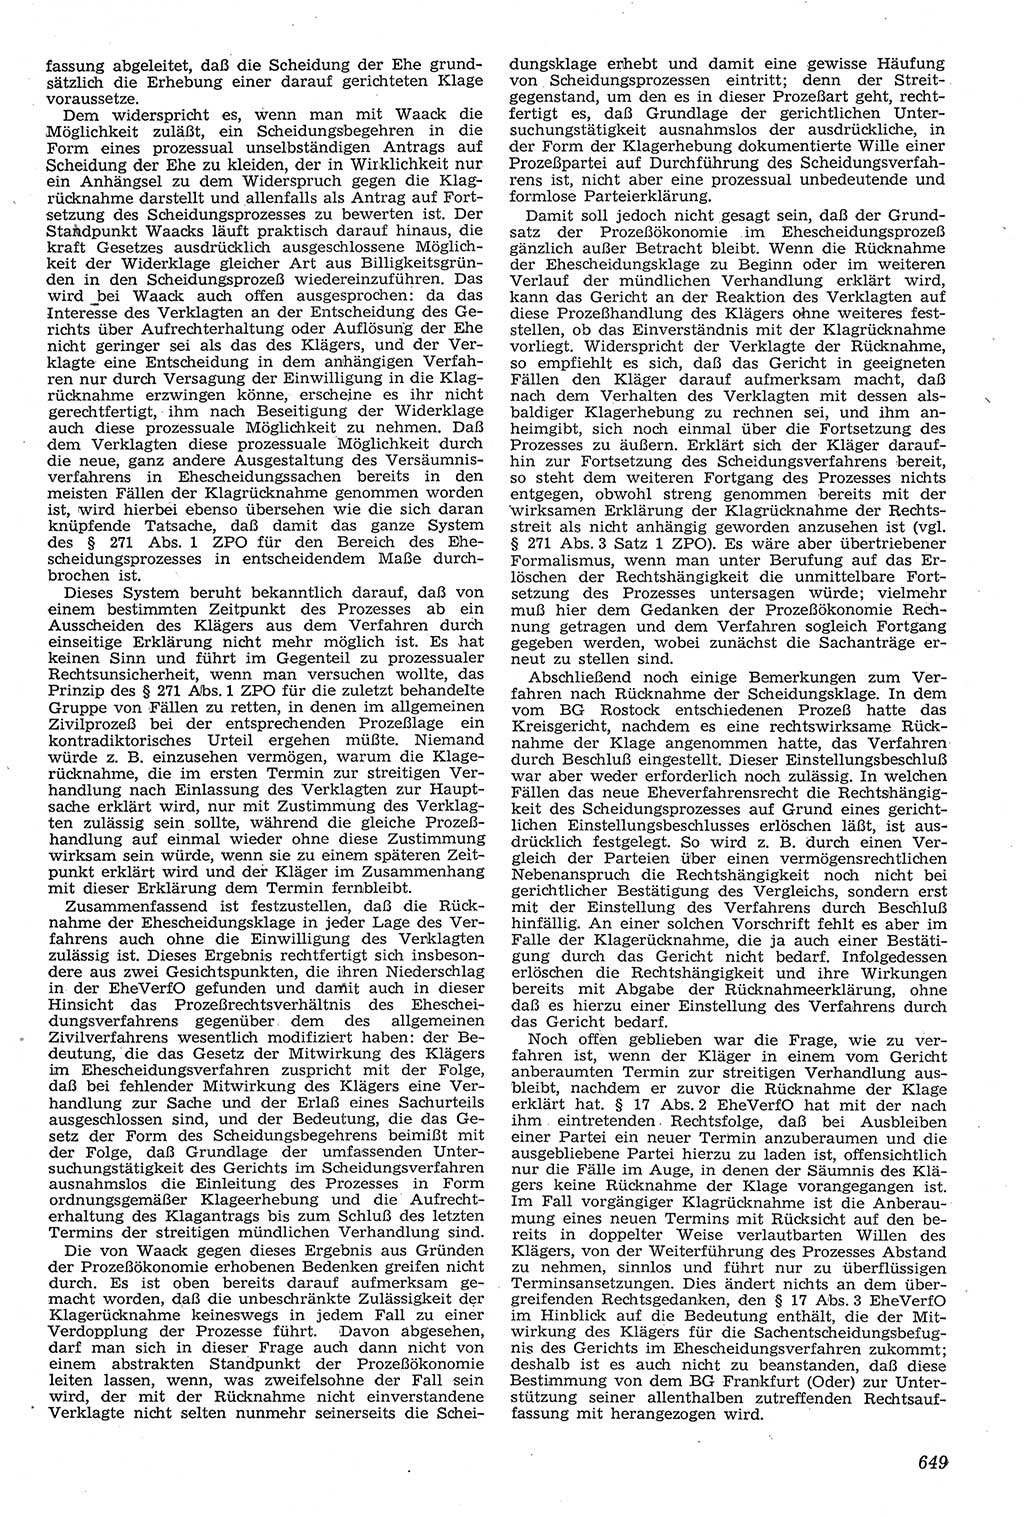 Neue Justiz (NJ), Zeitschrift für Recht und Rechtswissenschaft [Deutsche Demokratische Republik (DDR)], 11. Jahrgang 1957, Seite 649 (NJ DDR 1957, S. 649)